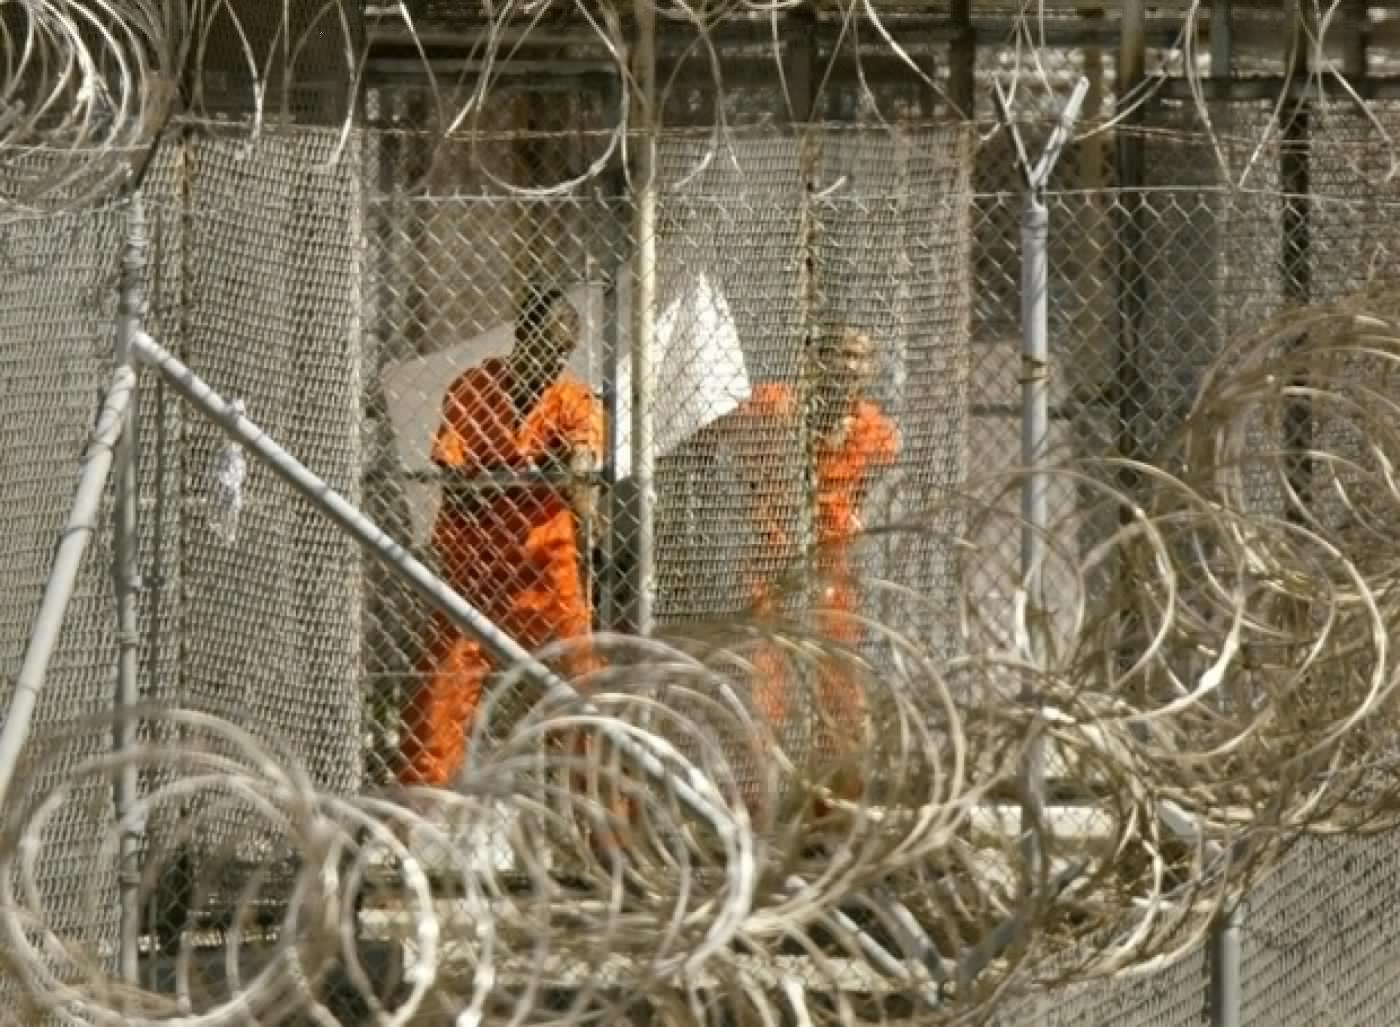 La prison de Guantánamo est devenue emblématique des pratiques inhumaines de détention (AFP)